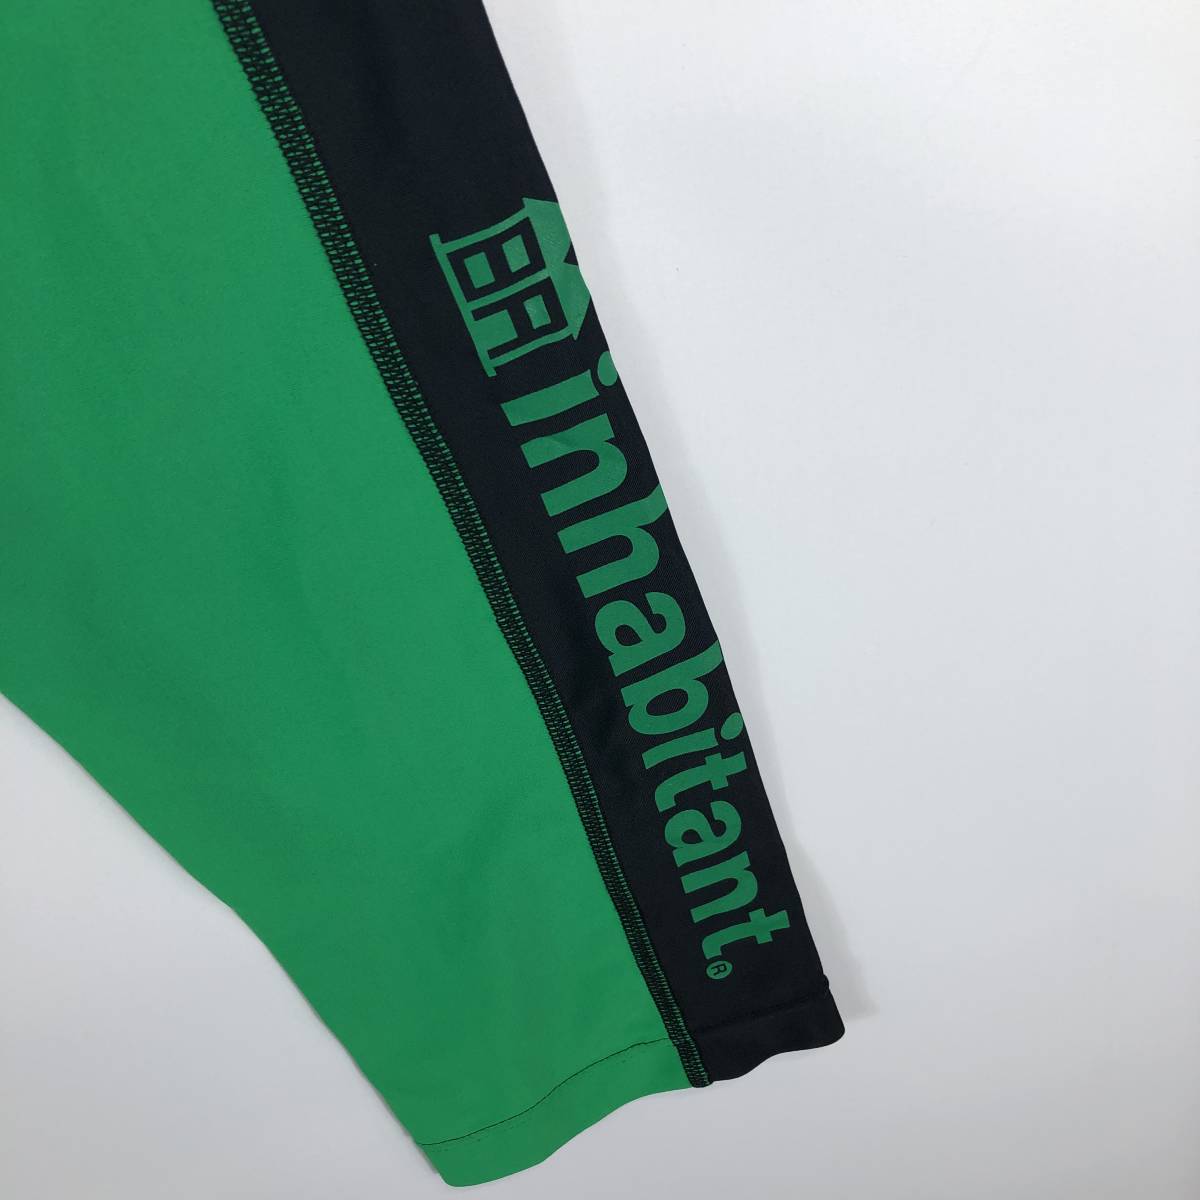  обитатель INHABITANT внутренний брюки трико черный зеленый M размер IHMC6930